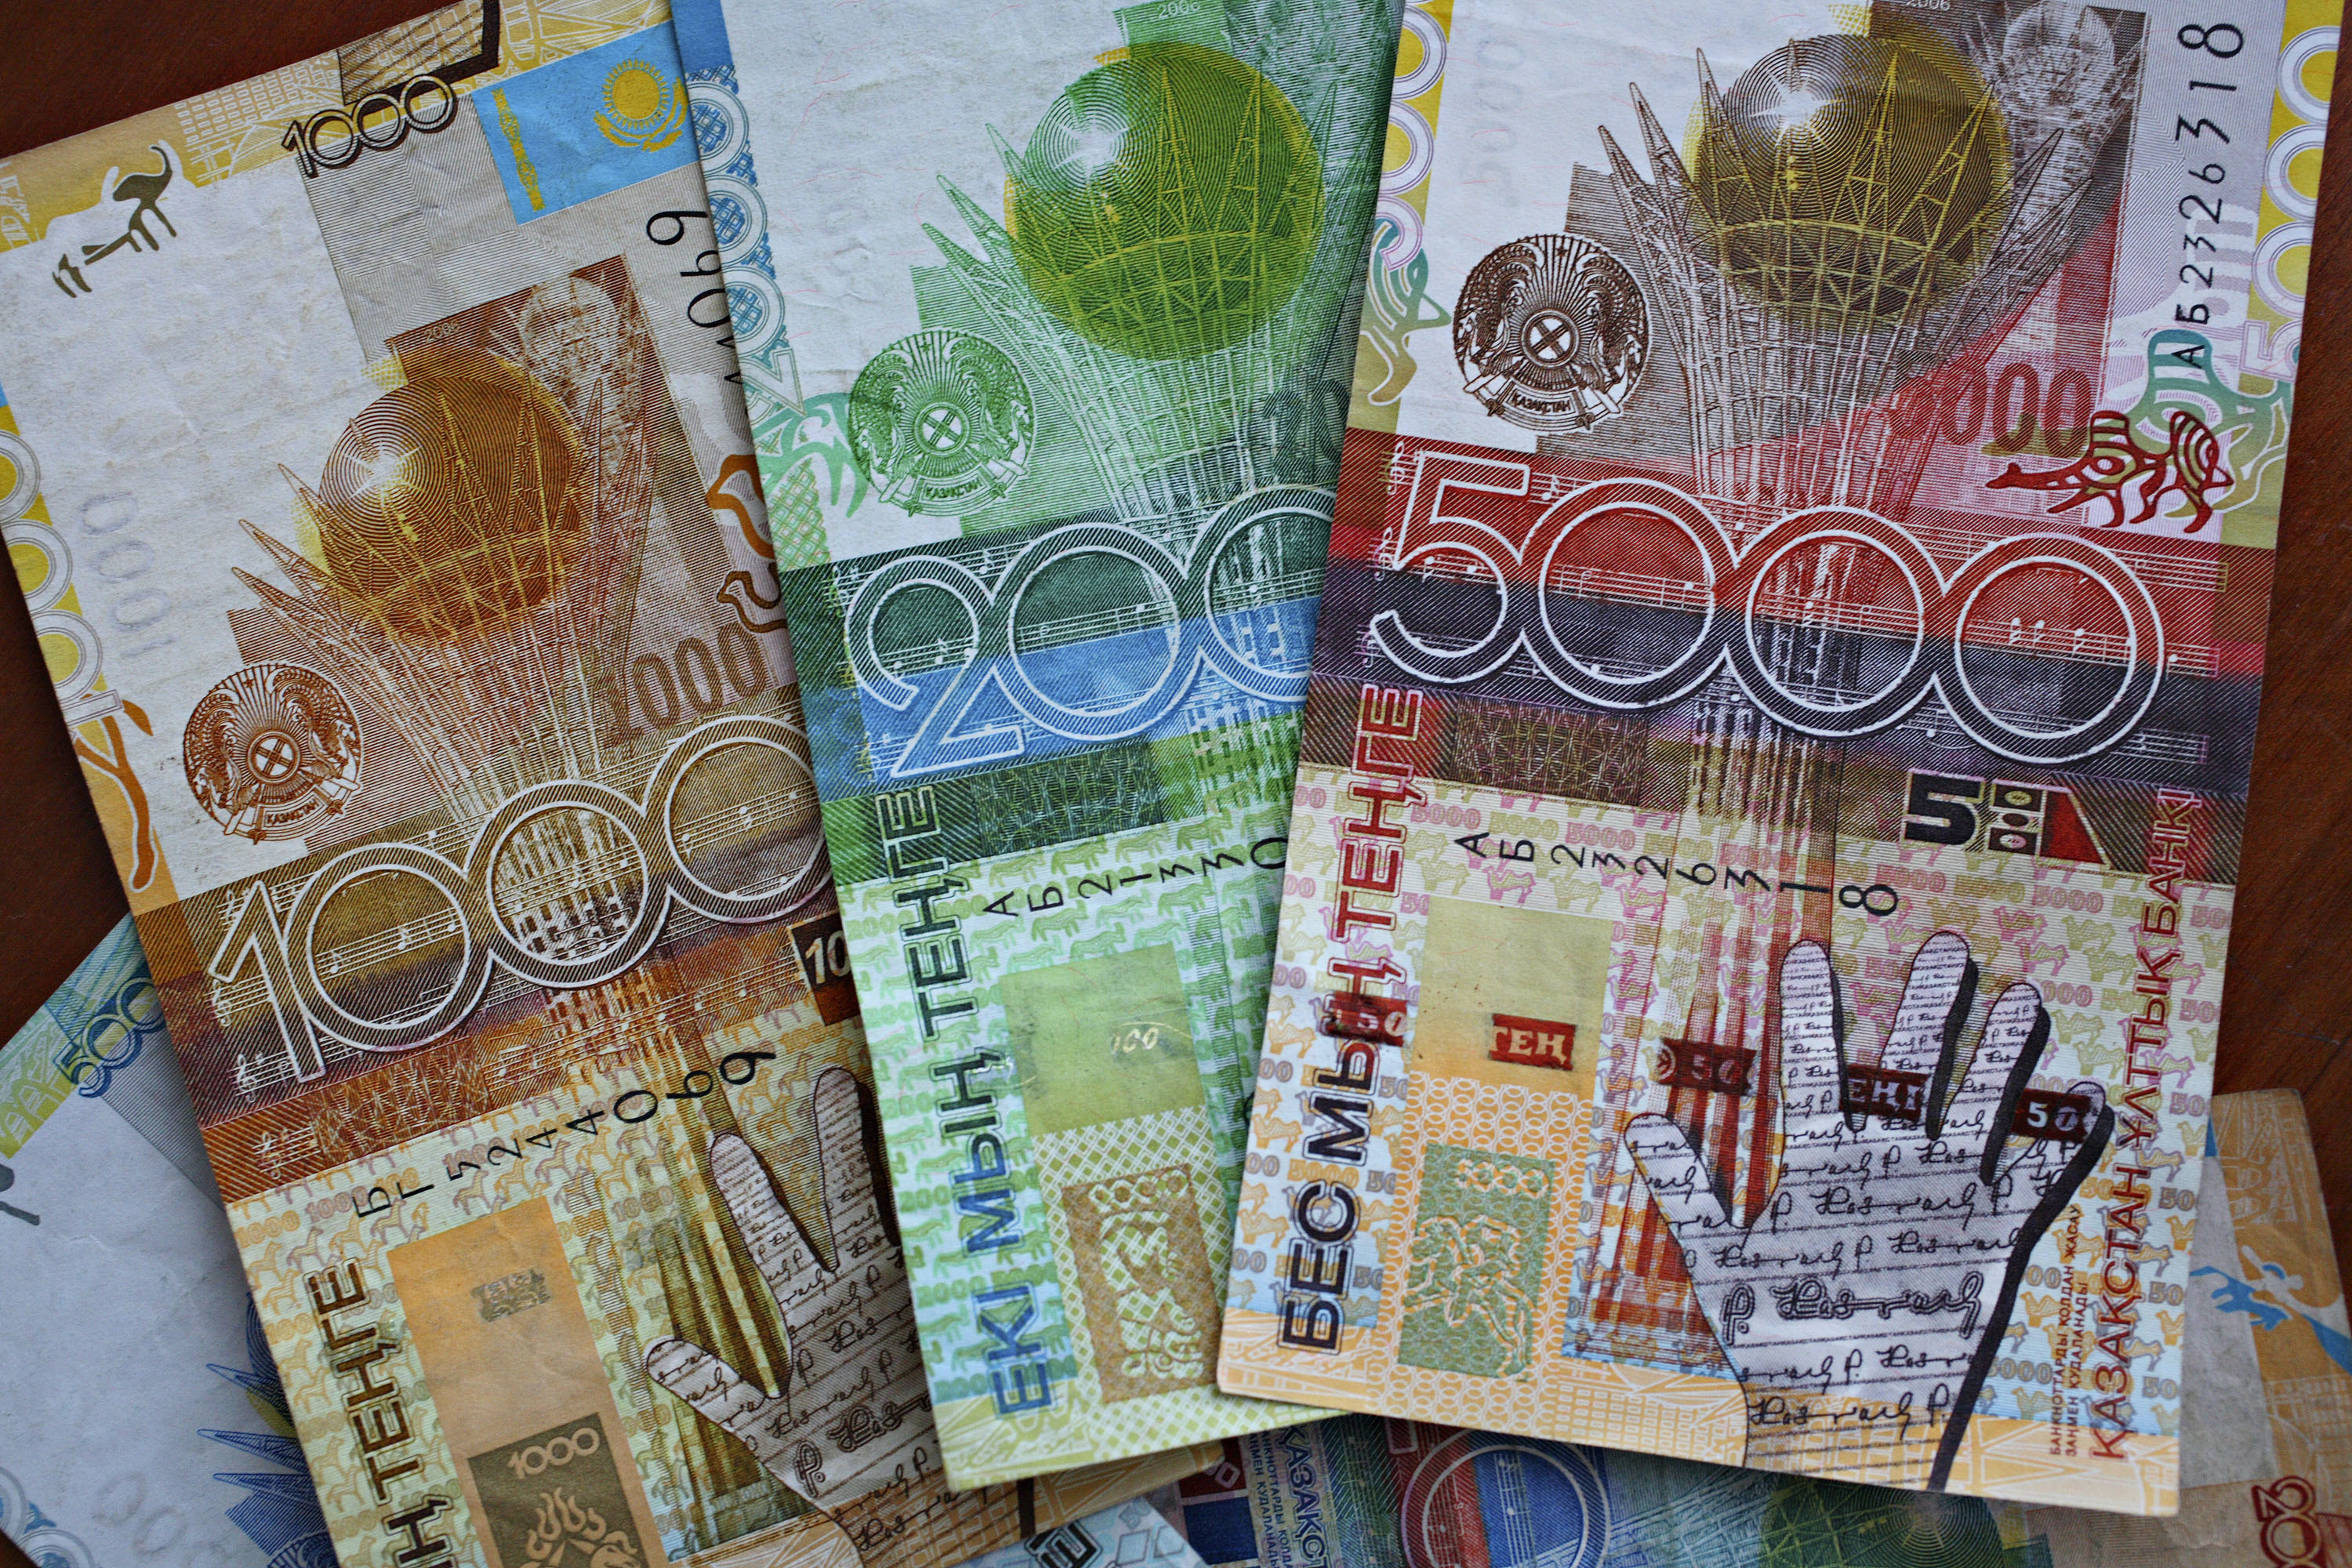 500 тг в рубли. Тенге купюры. Национальная валюта Казахстана. Тенге монеты и купюры. Тенге старого образца.